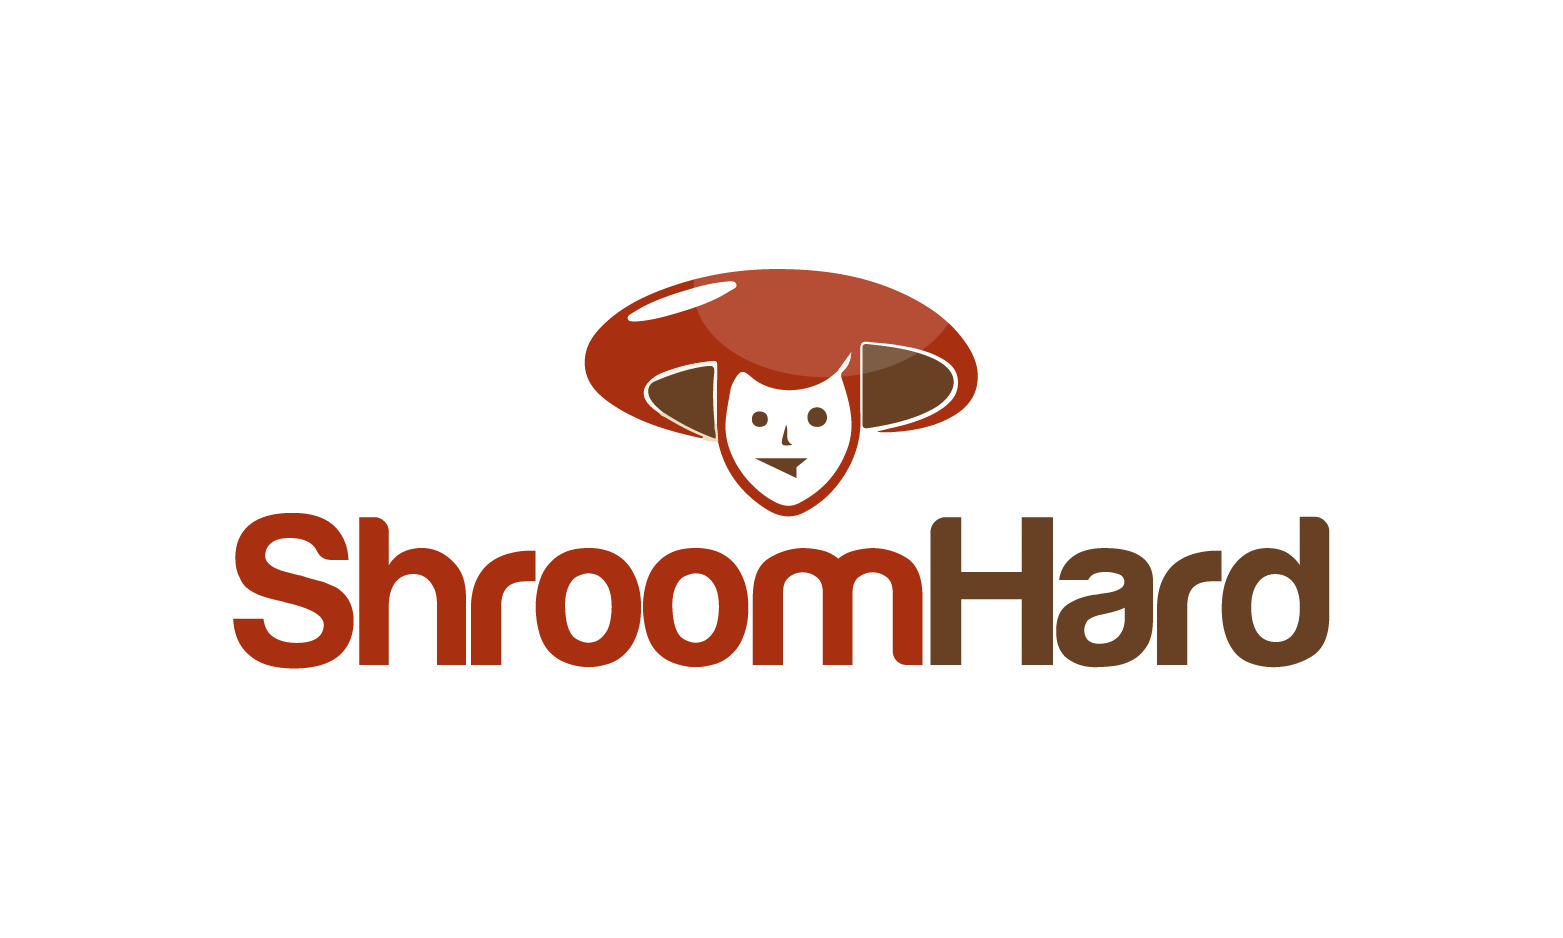 ShroomHard.com - Creative brandable domain for sale